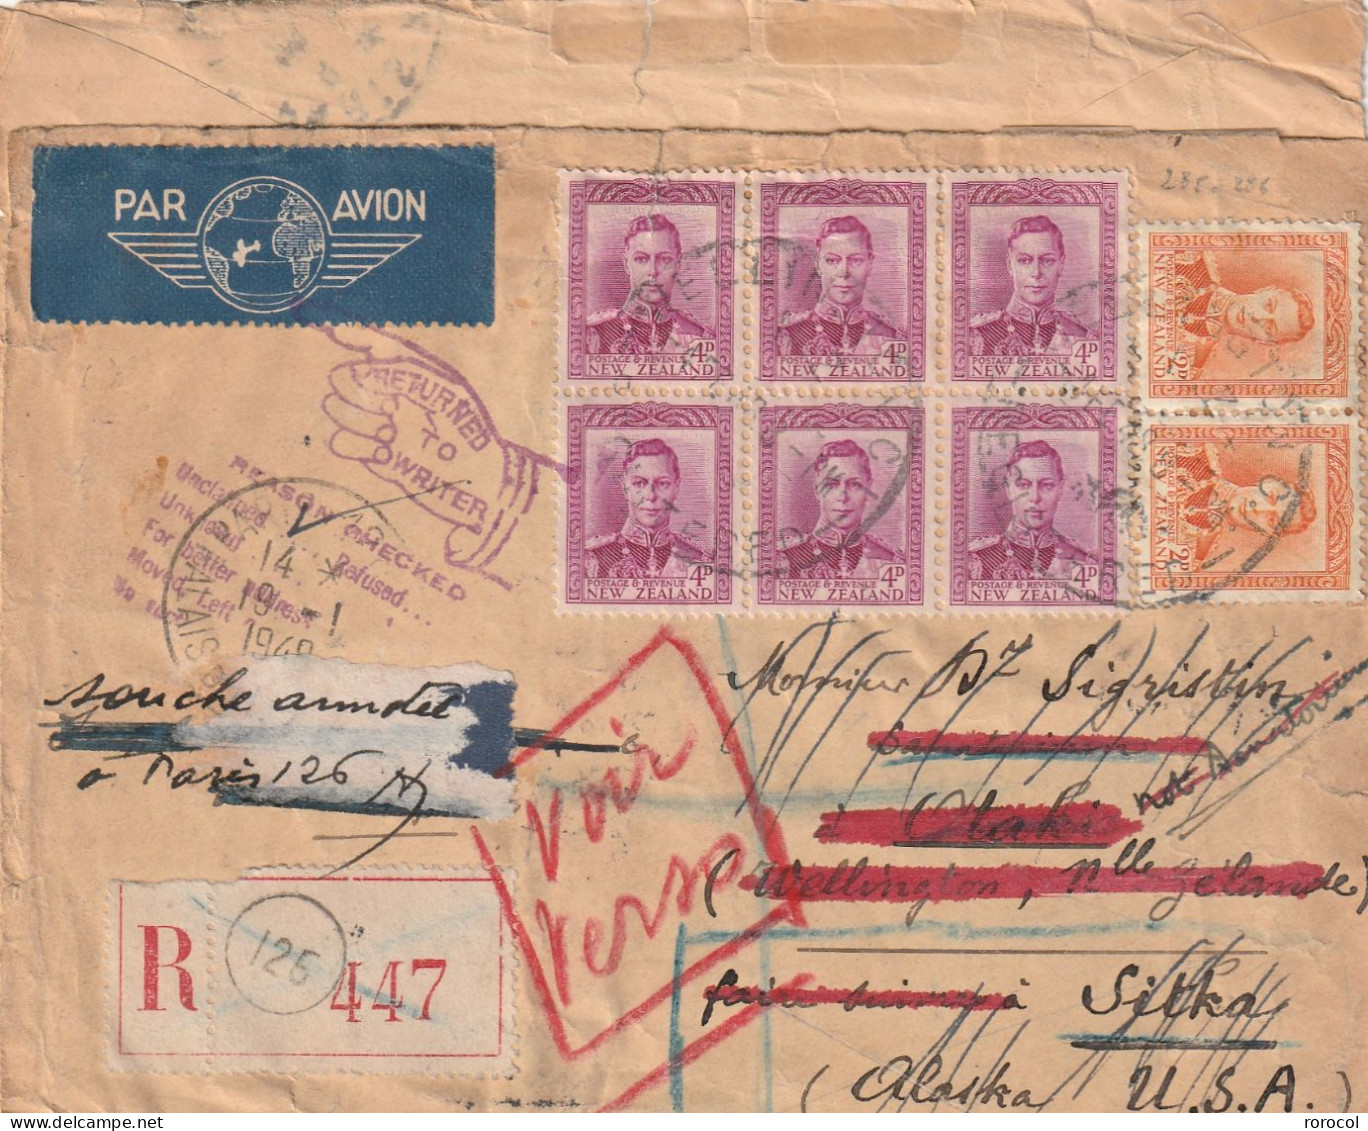 NOUVELLE - ZELANDE Lettre Recommandée 1948 WELLINGTON Pour L'ALASKA Retourned To Writer Passage Par PARIS - Storia Postale